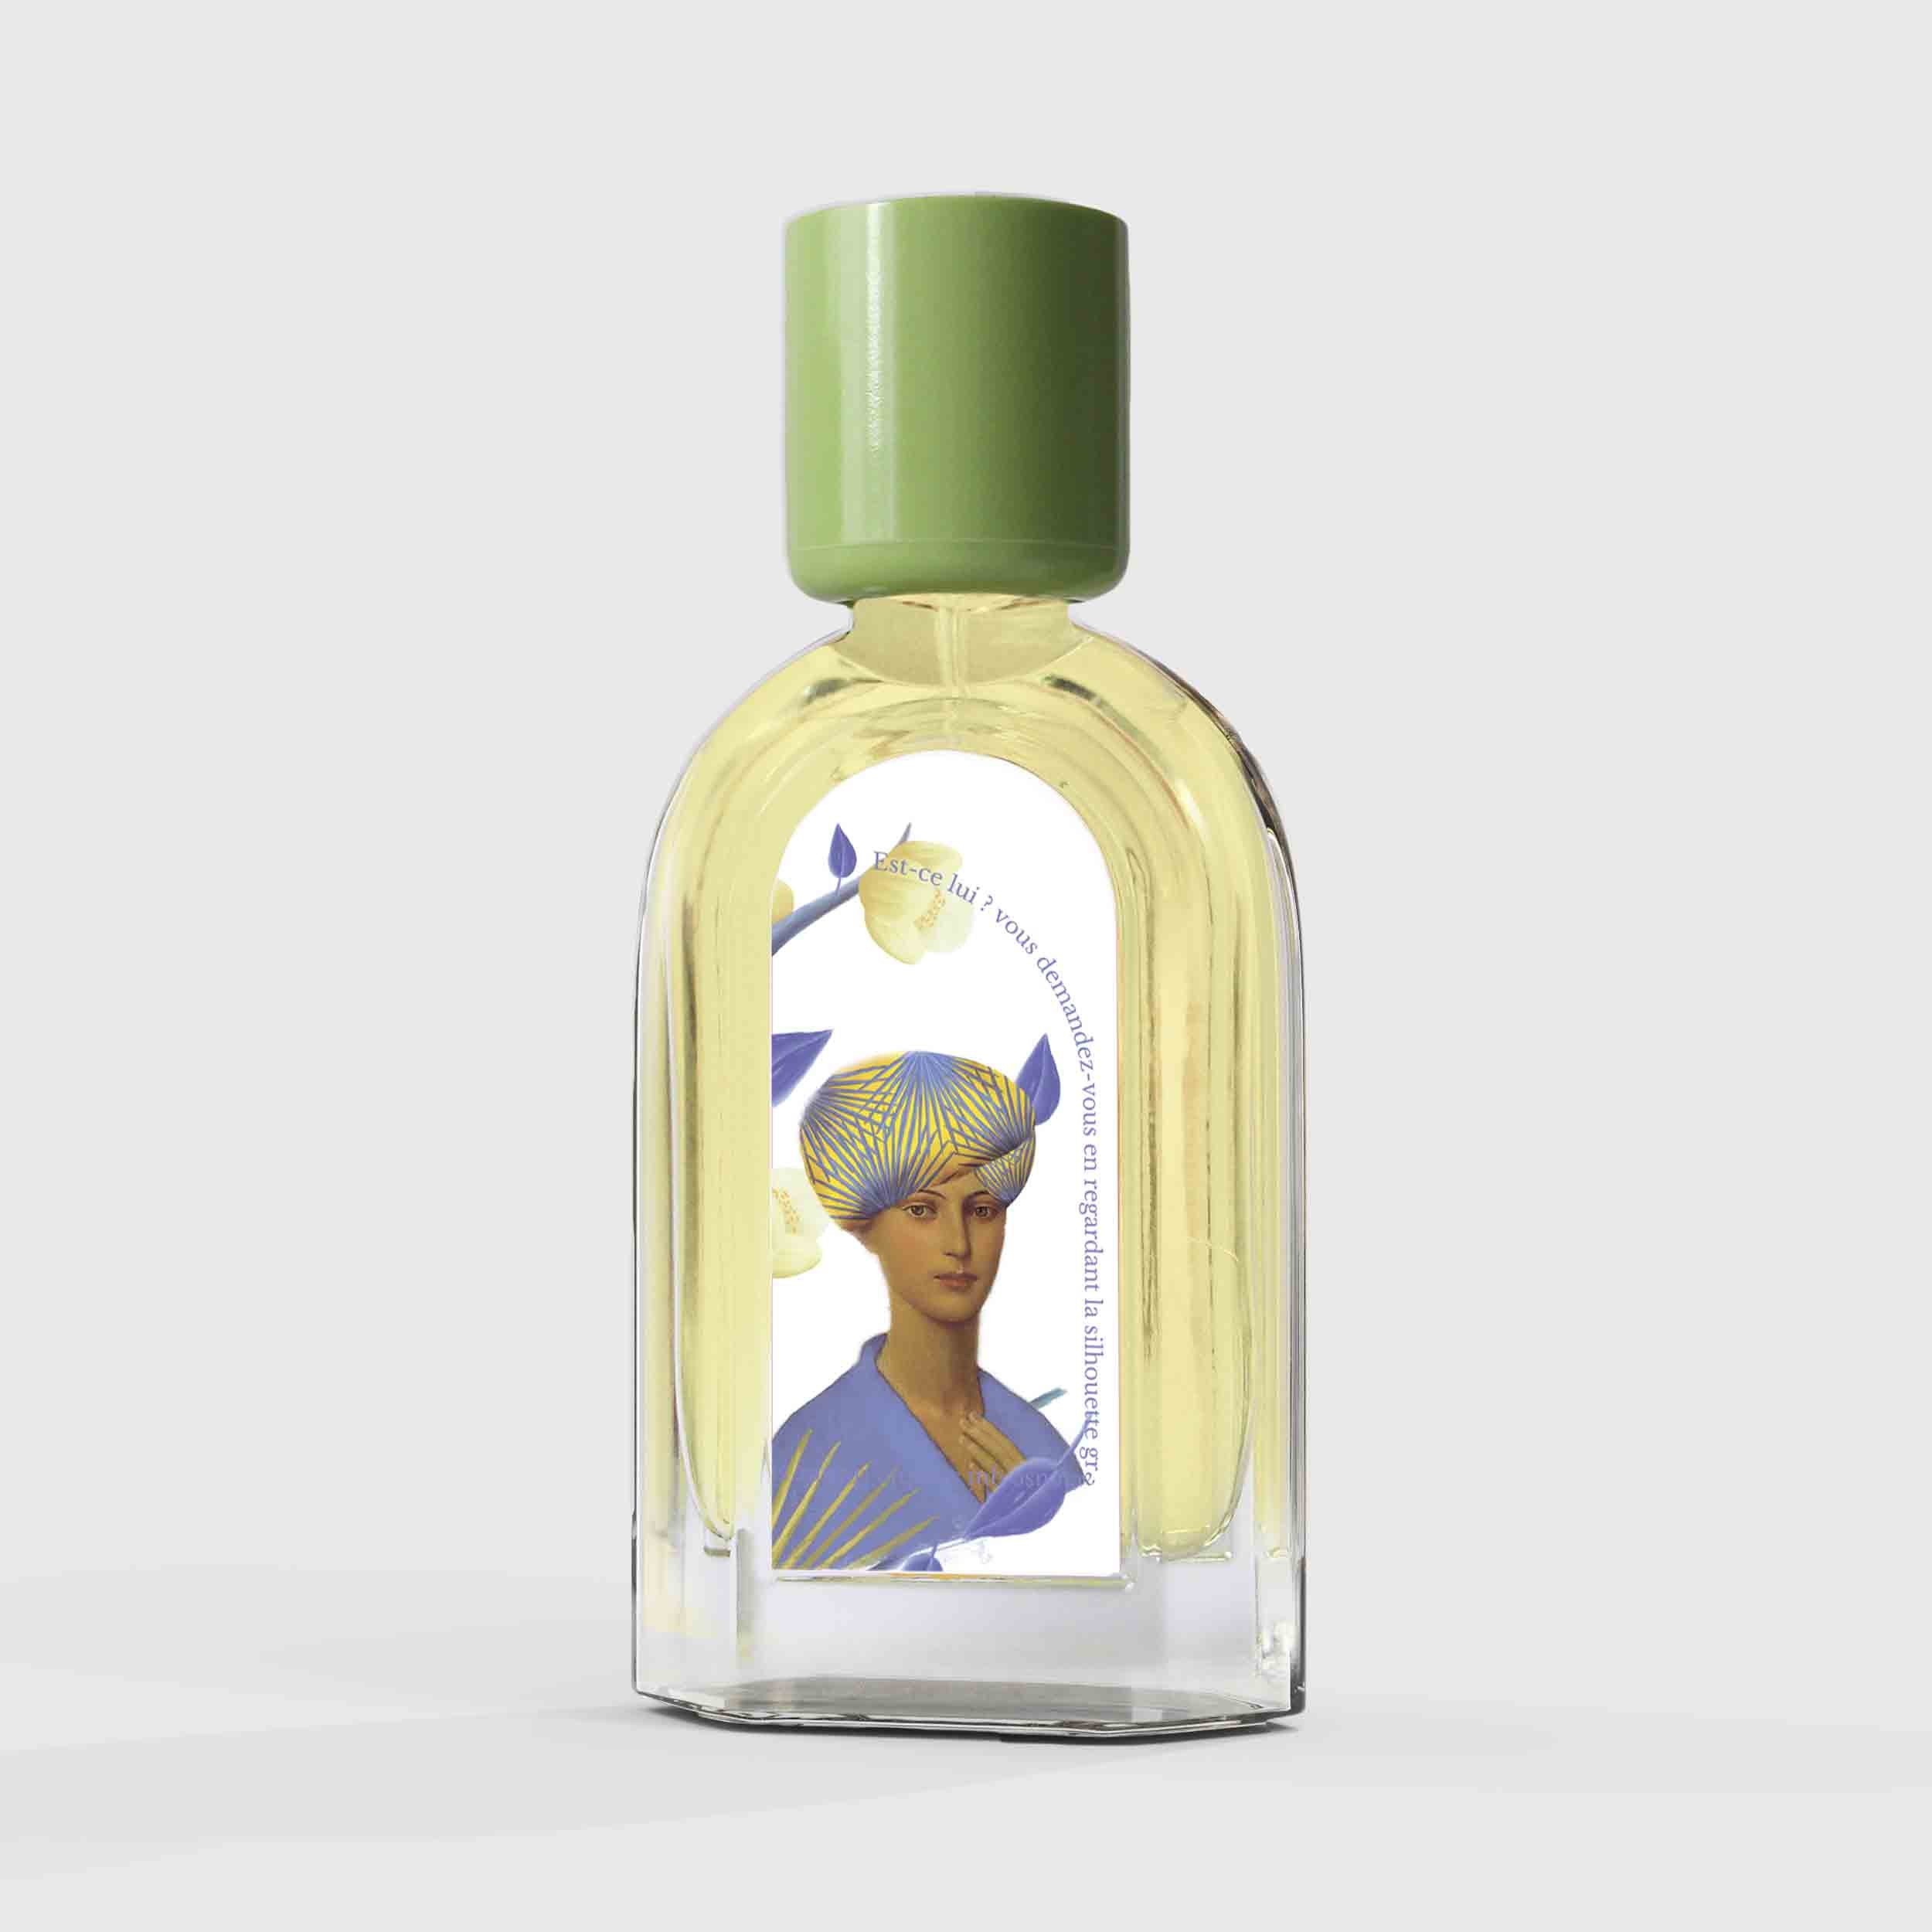 Jasmin Majorelle Eau de Parfum 50ml Bottle by Le Jardin Retrouvé